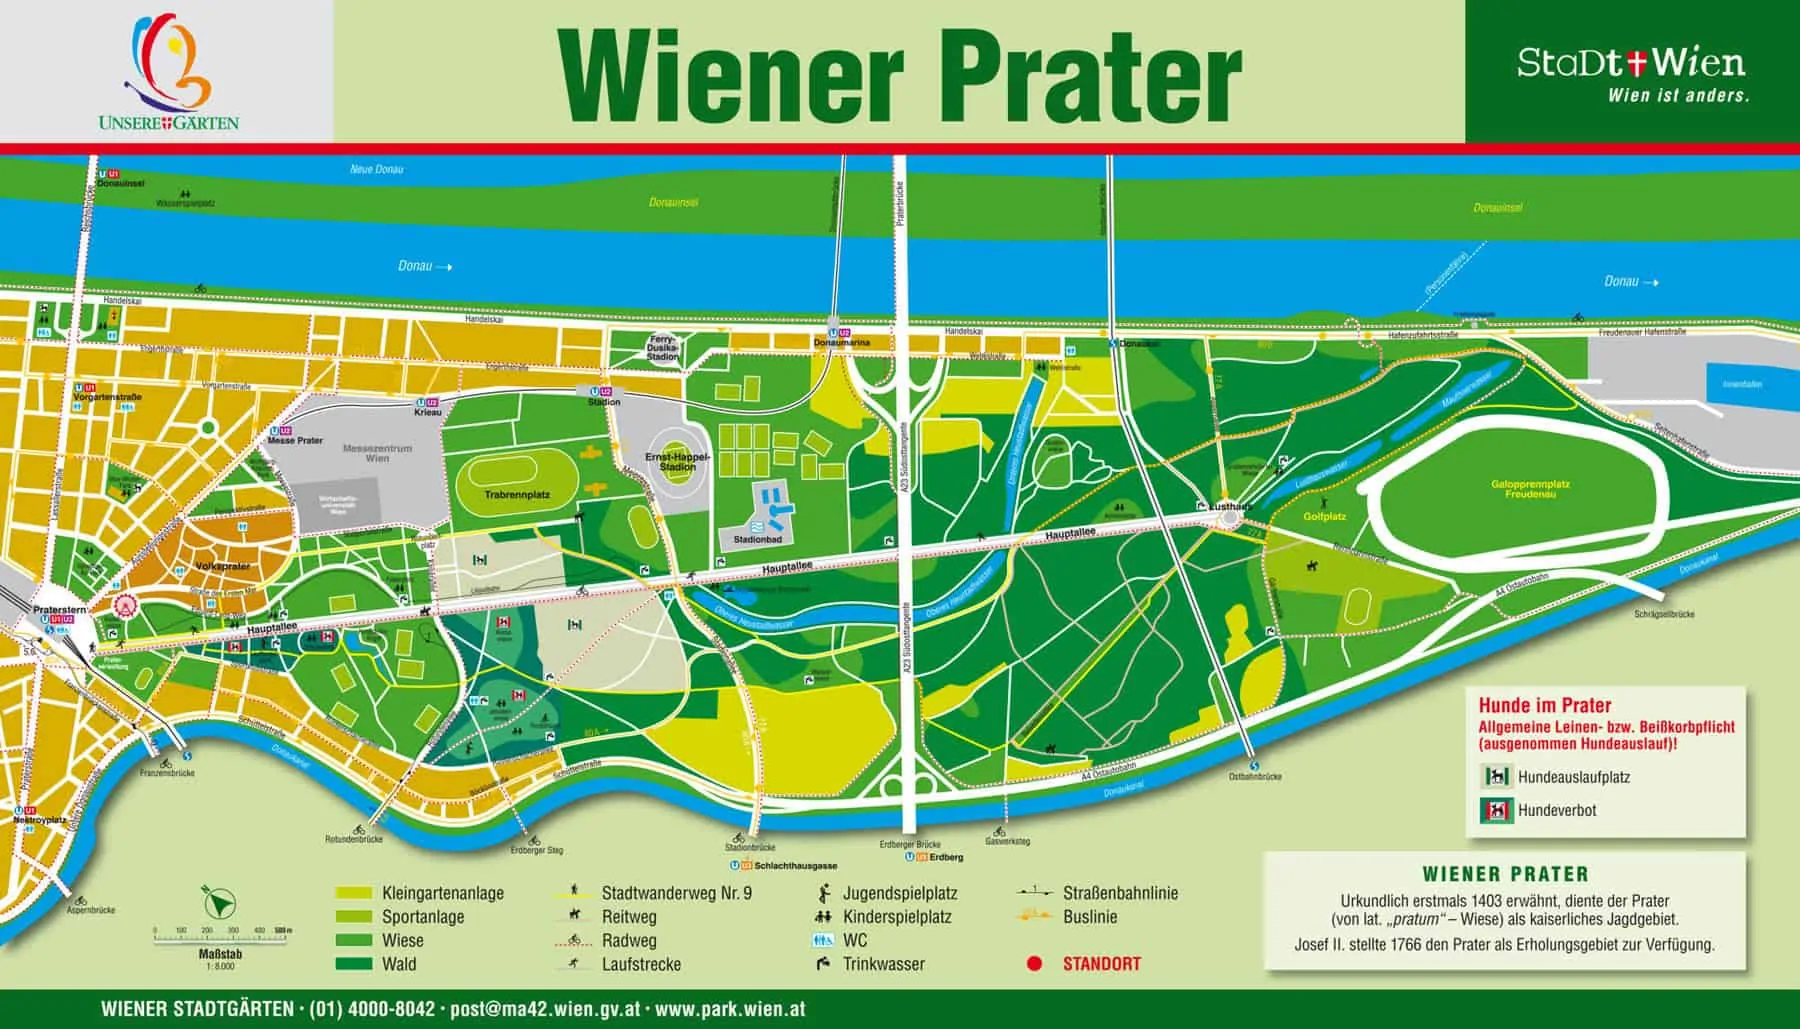 der Wiener Prater in unmittelbarer Nähe